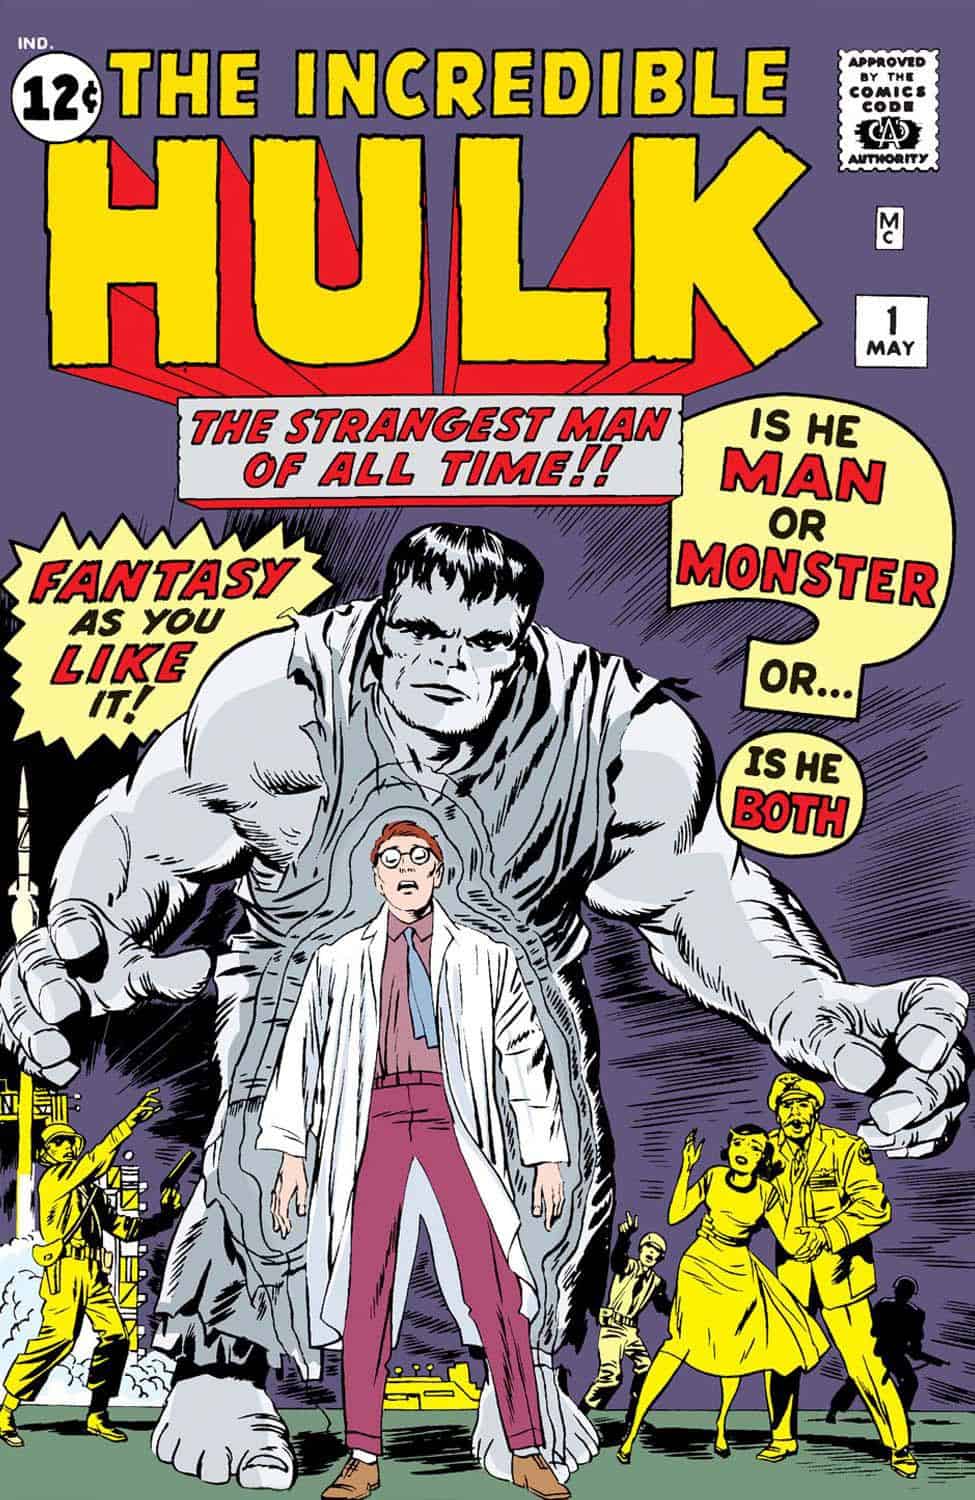 The Incredible Hulk No. 1